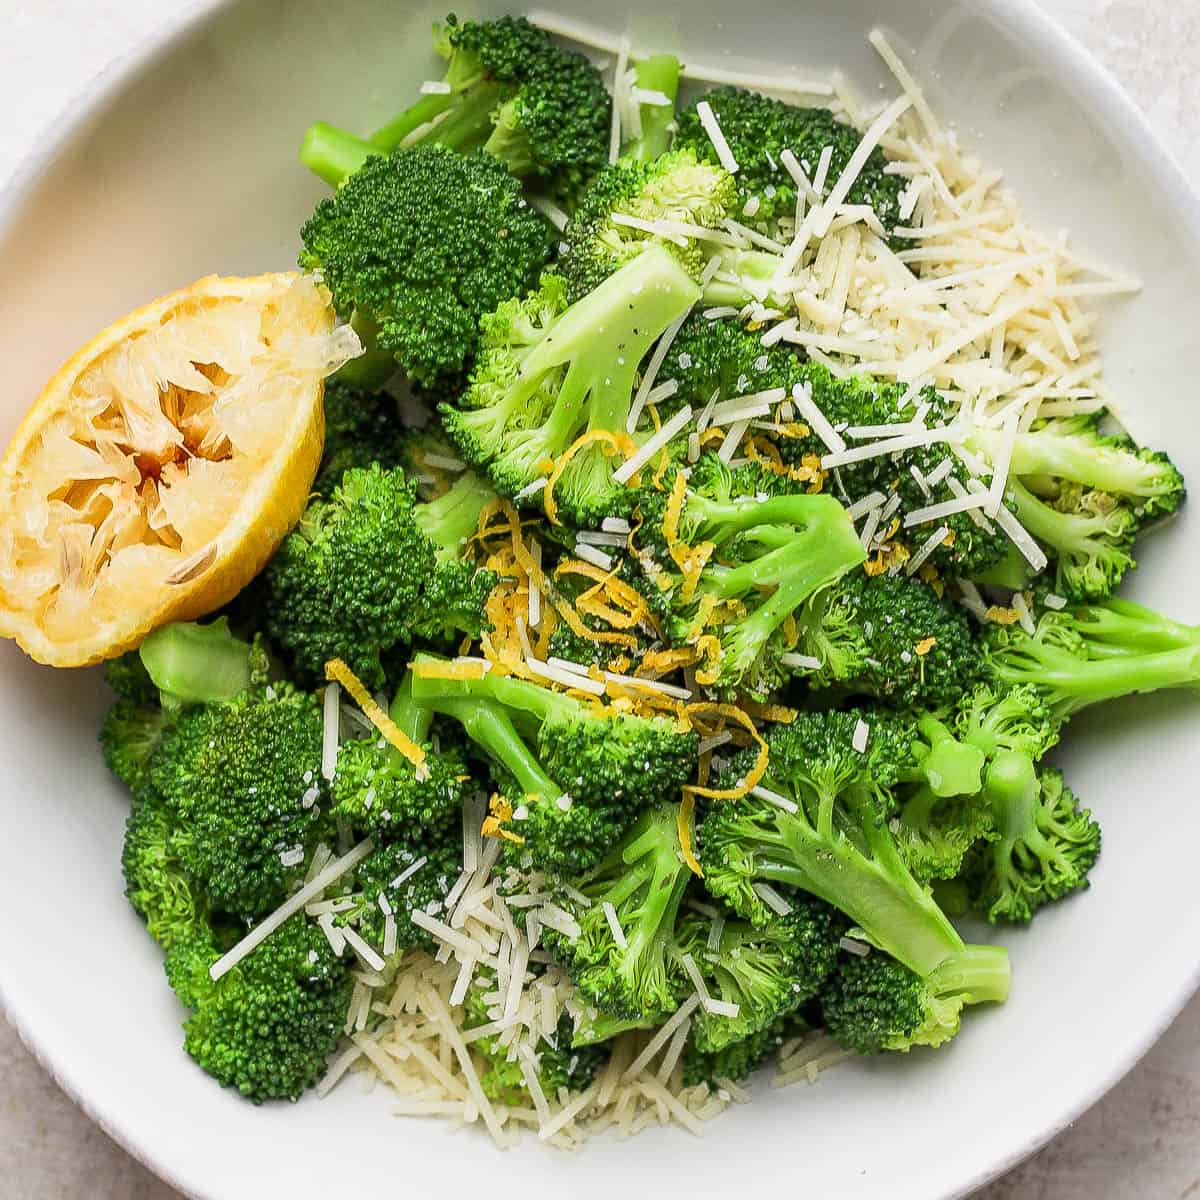 Bowl of parmesan broccoli with lemon.